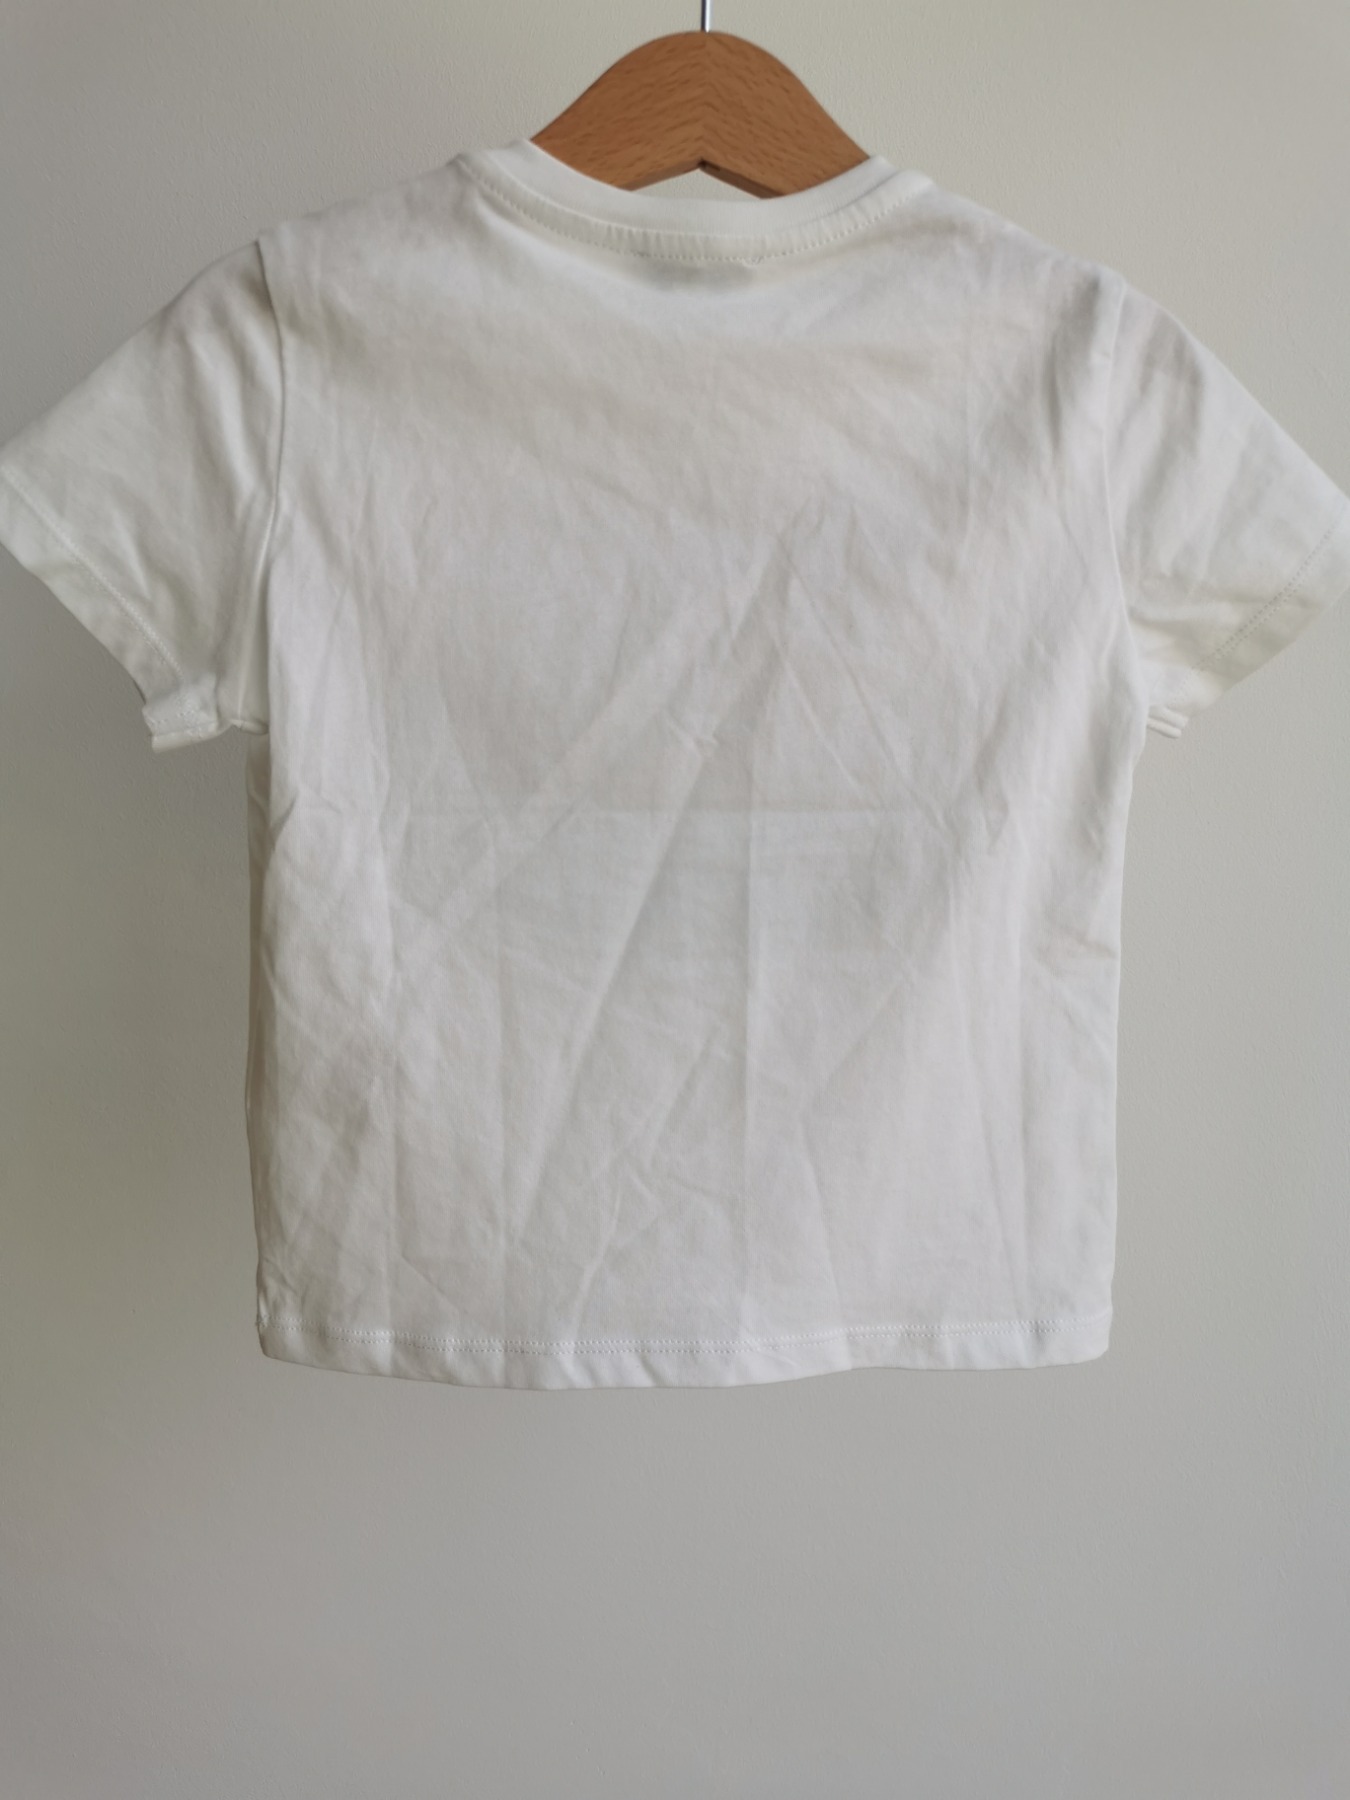 NEU T-Shirt - Größe 98 4